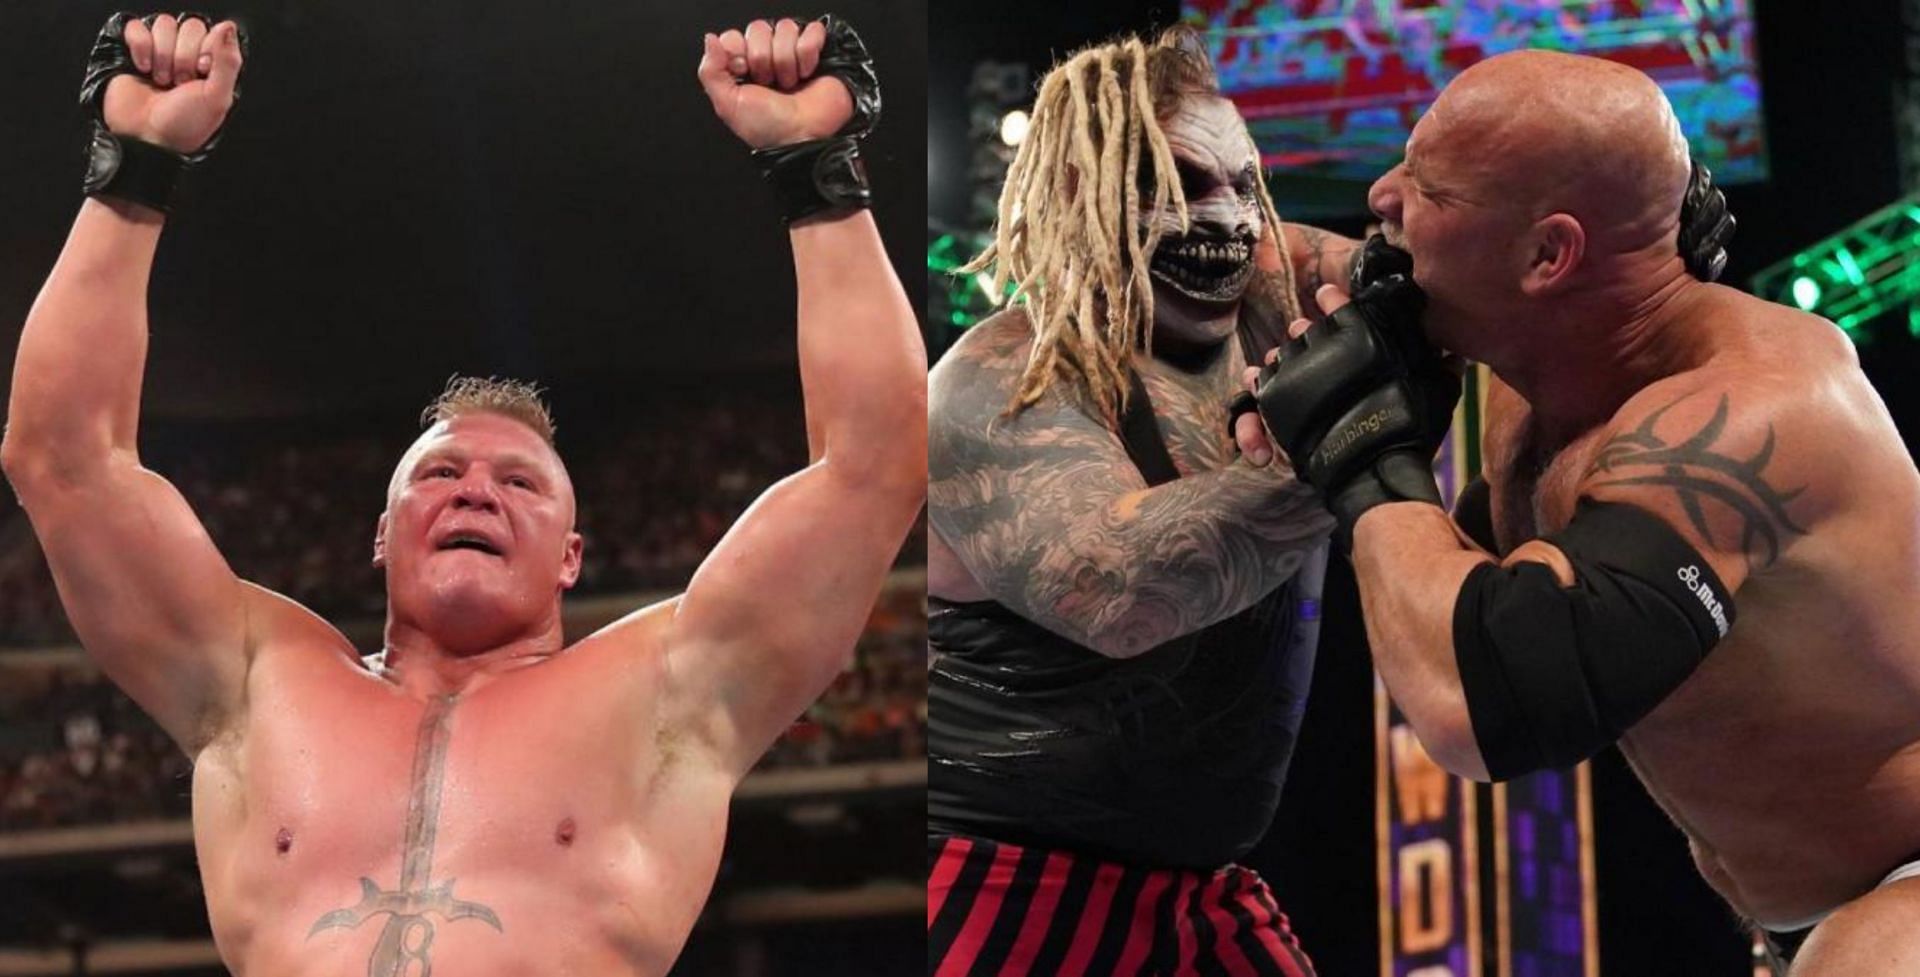 WWE Extreme Rules में फैंस को सरप्राइज मिल सकता है 